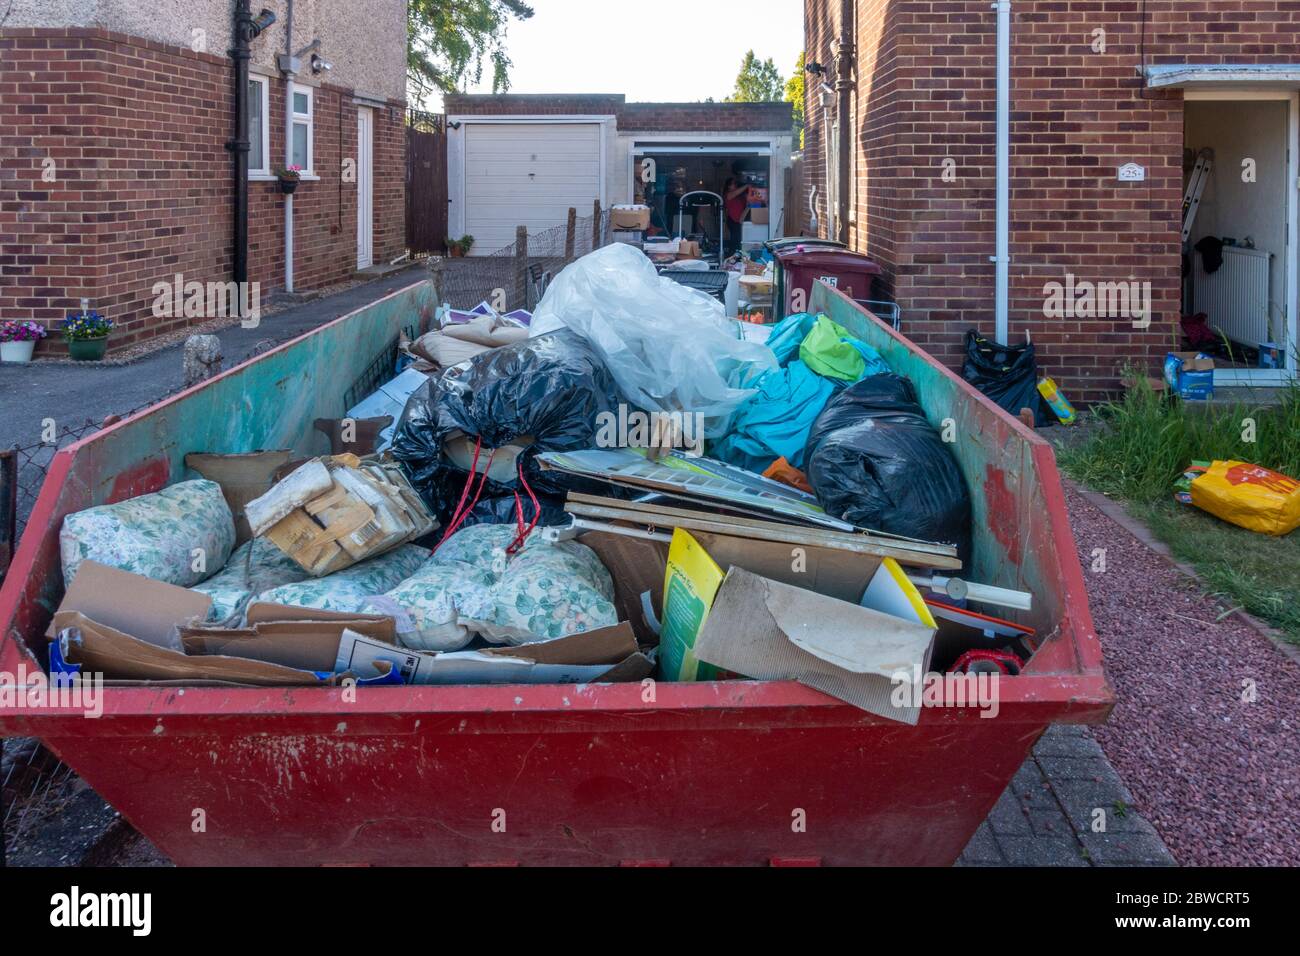 Ein sprung auf der Auffahrt eines Wohnhauses voller Müll, da der Hausbesitzer einen Klon aus dem verroteten Müll hat. Stockfoto